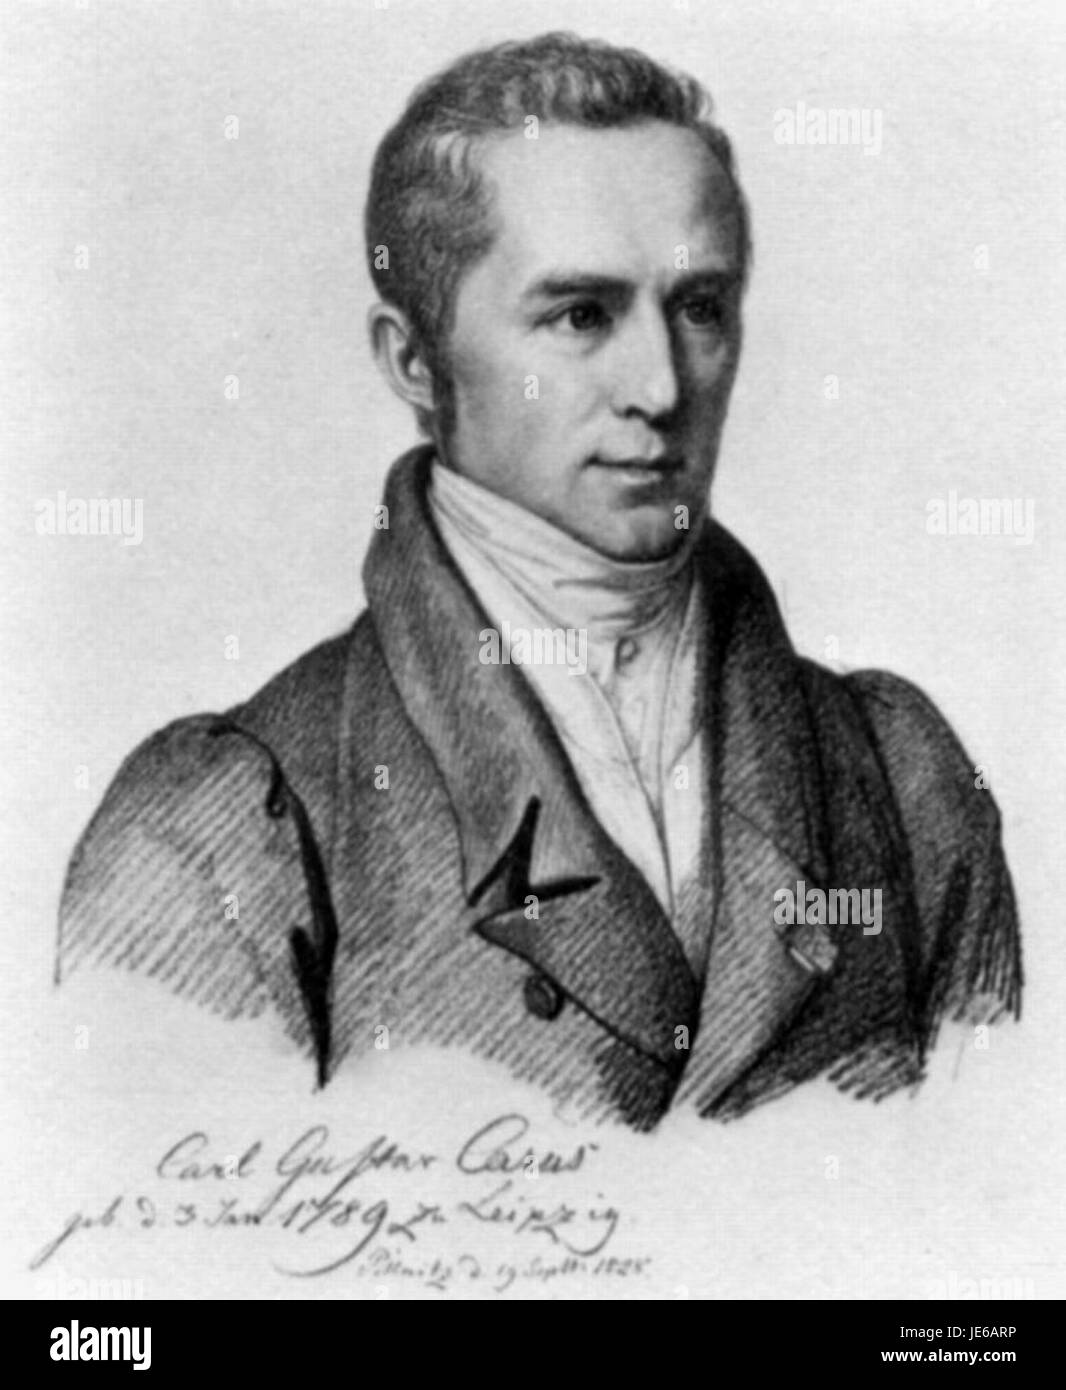 Carl Christian Vogel von Vogelstein - Carl Gustav Carus 1828 (01) Stock Photo